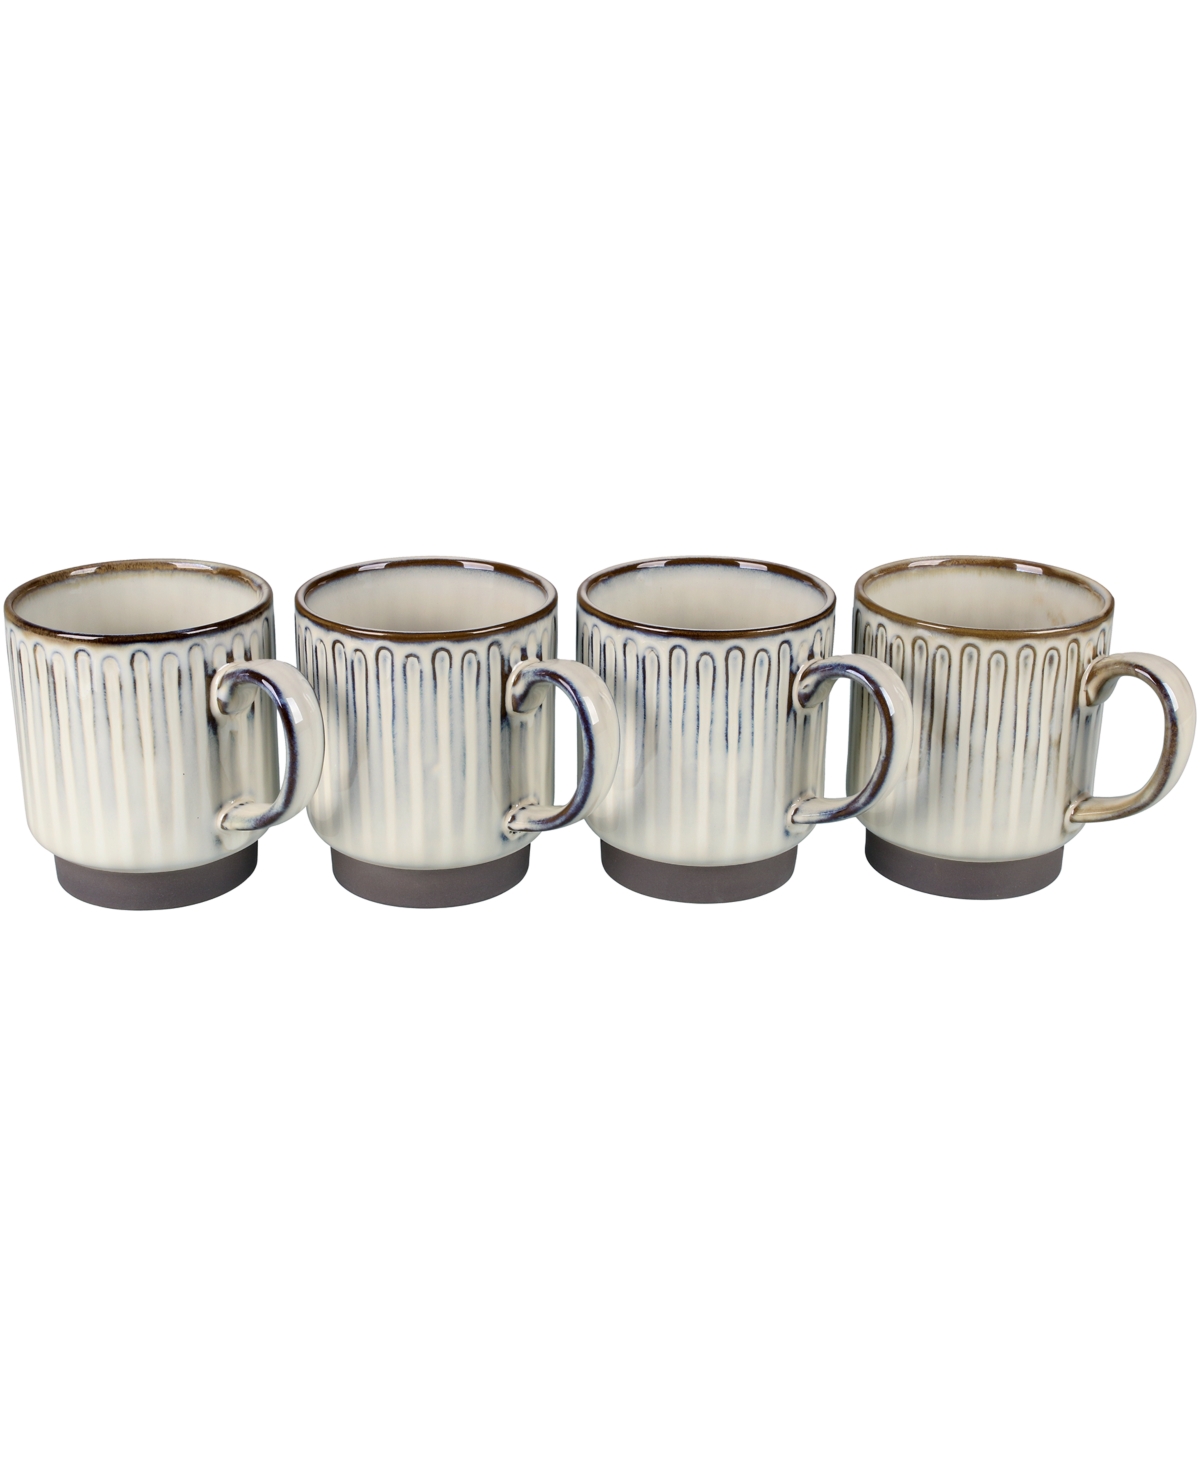 Colonnade Set of Four Mugs, 16 oz - Cream